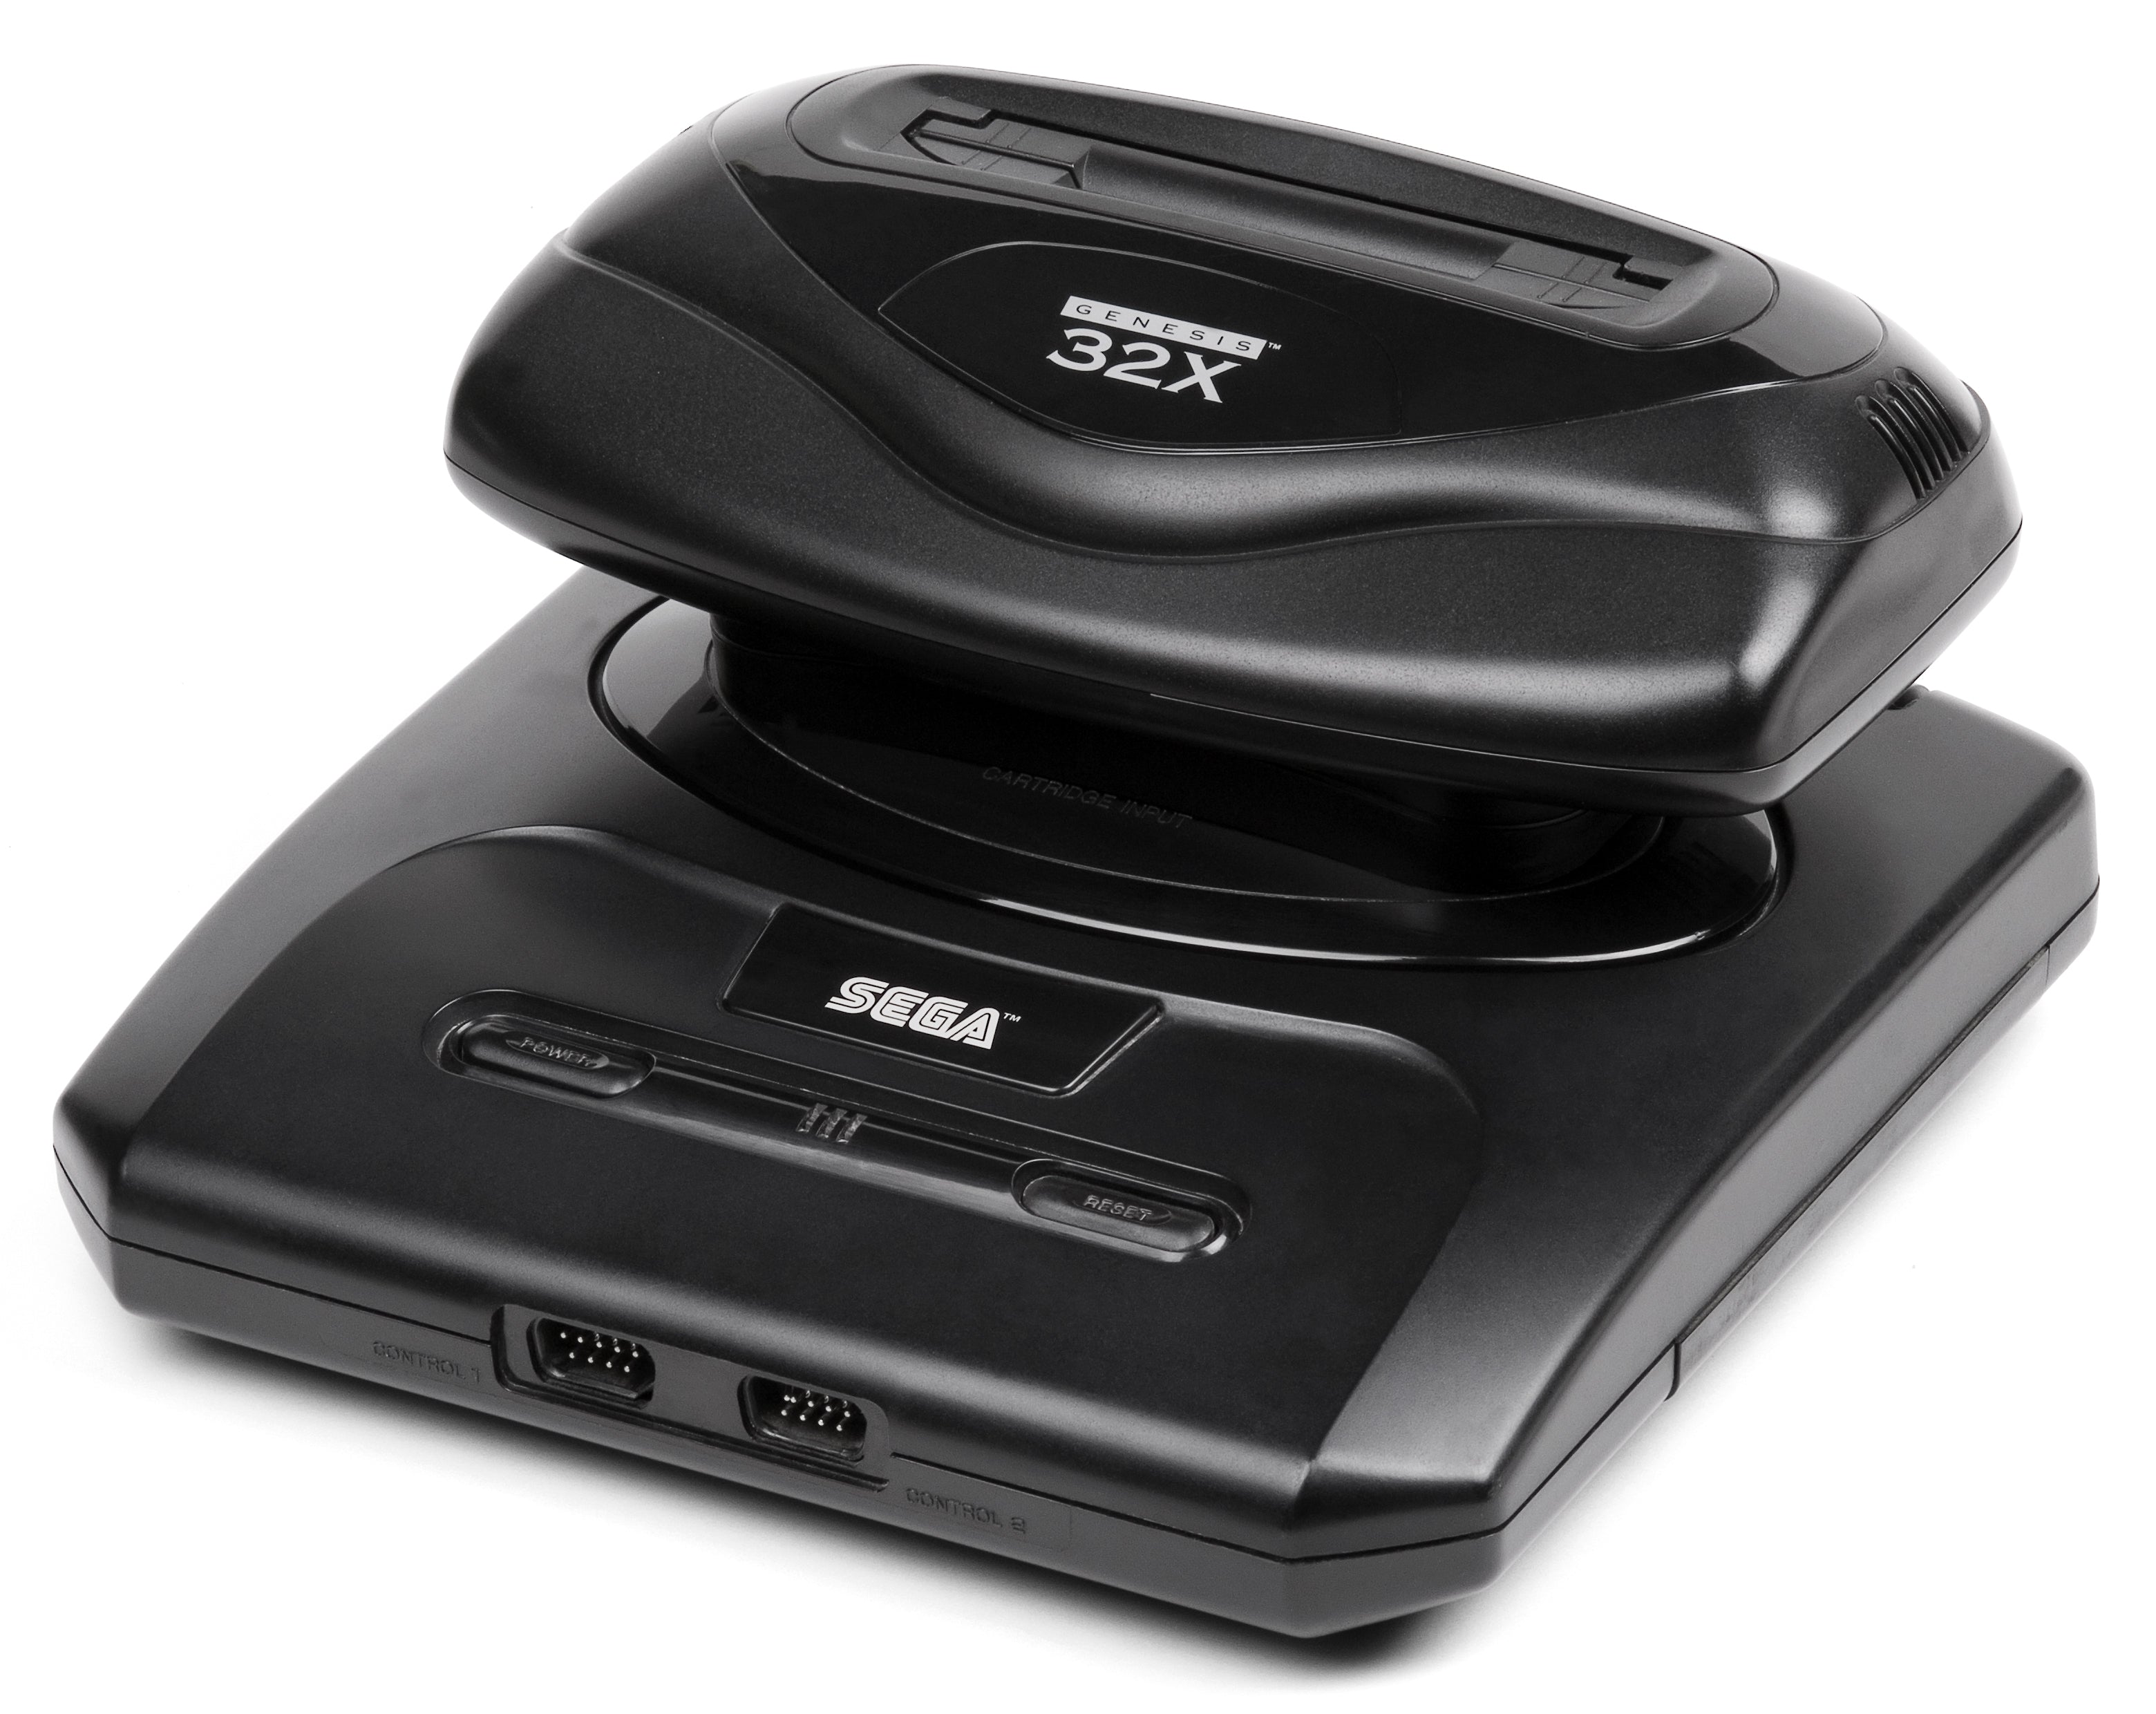 Sega 32X – Core Gaming